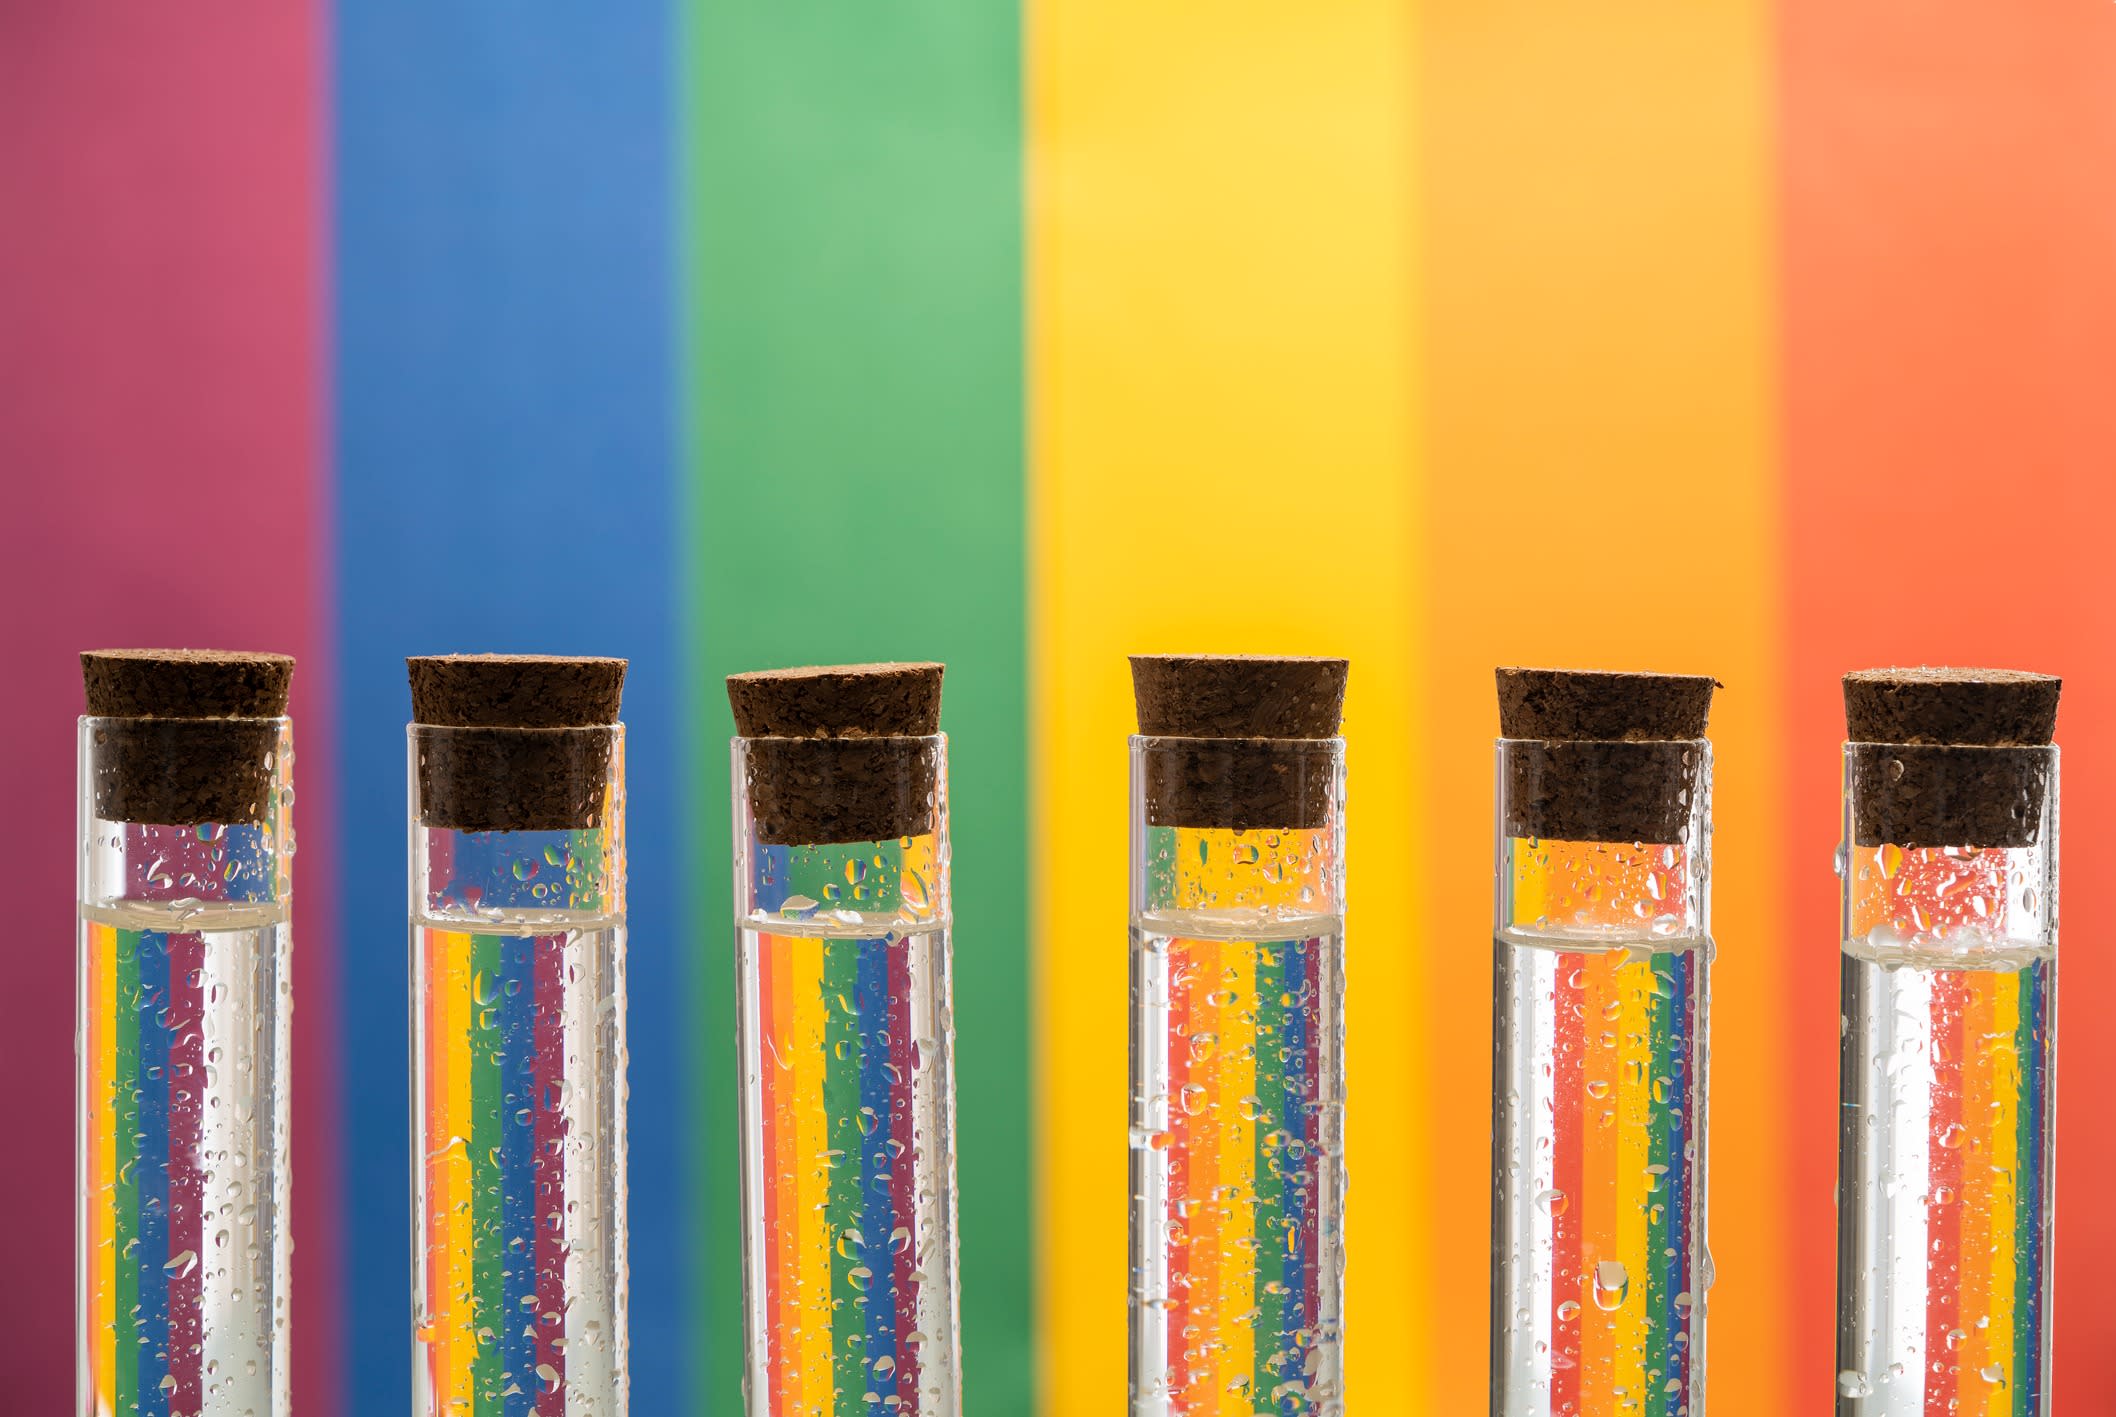 Test tubes against a rainbow flag background